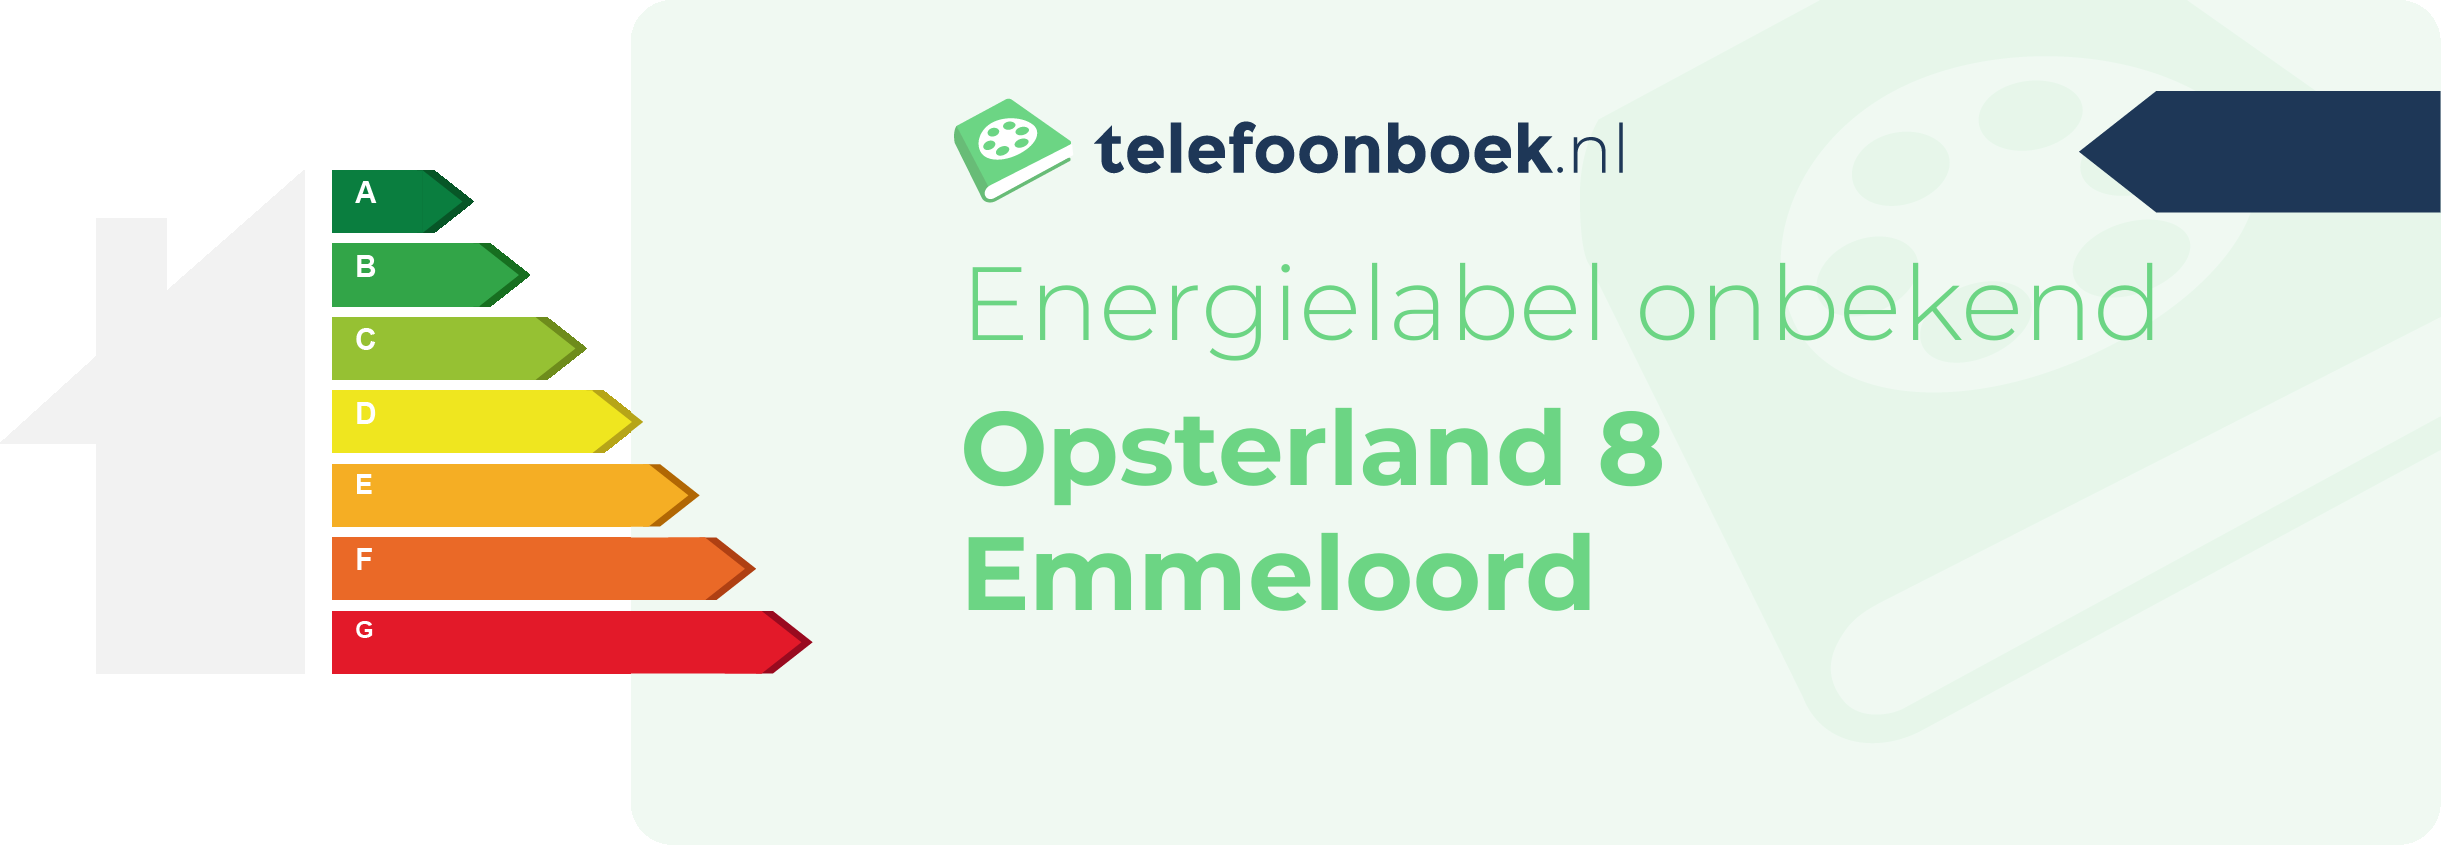 Energielabel Opsterland 8 Emmeloord